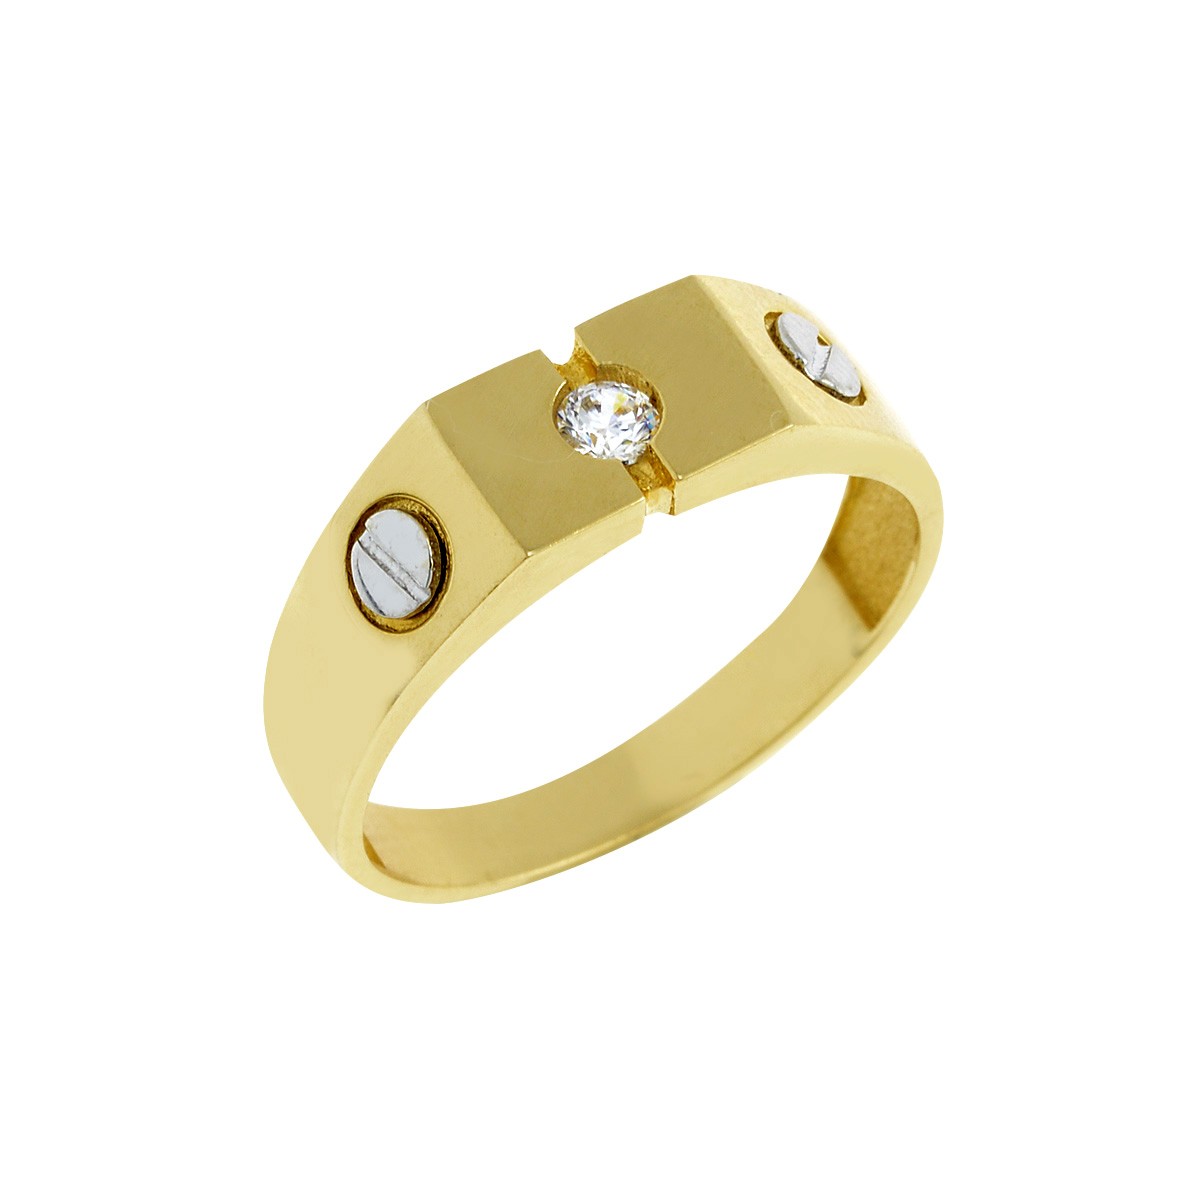 Δακτυλίδι Ανδρικό Χρυσό Κ14 με Ζιργκόν Κωδ: 401147